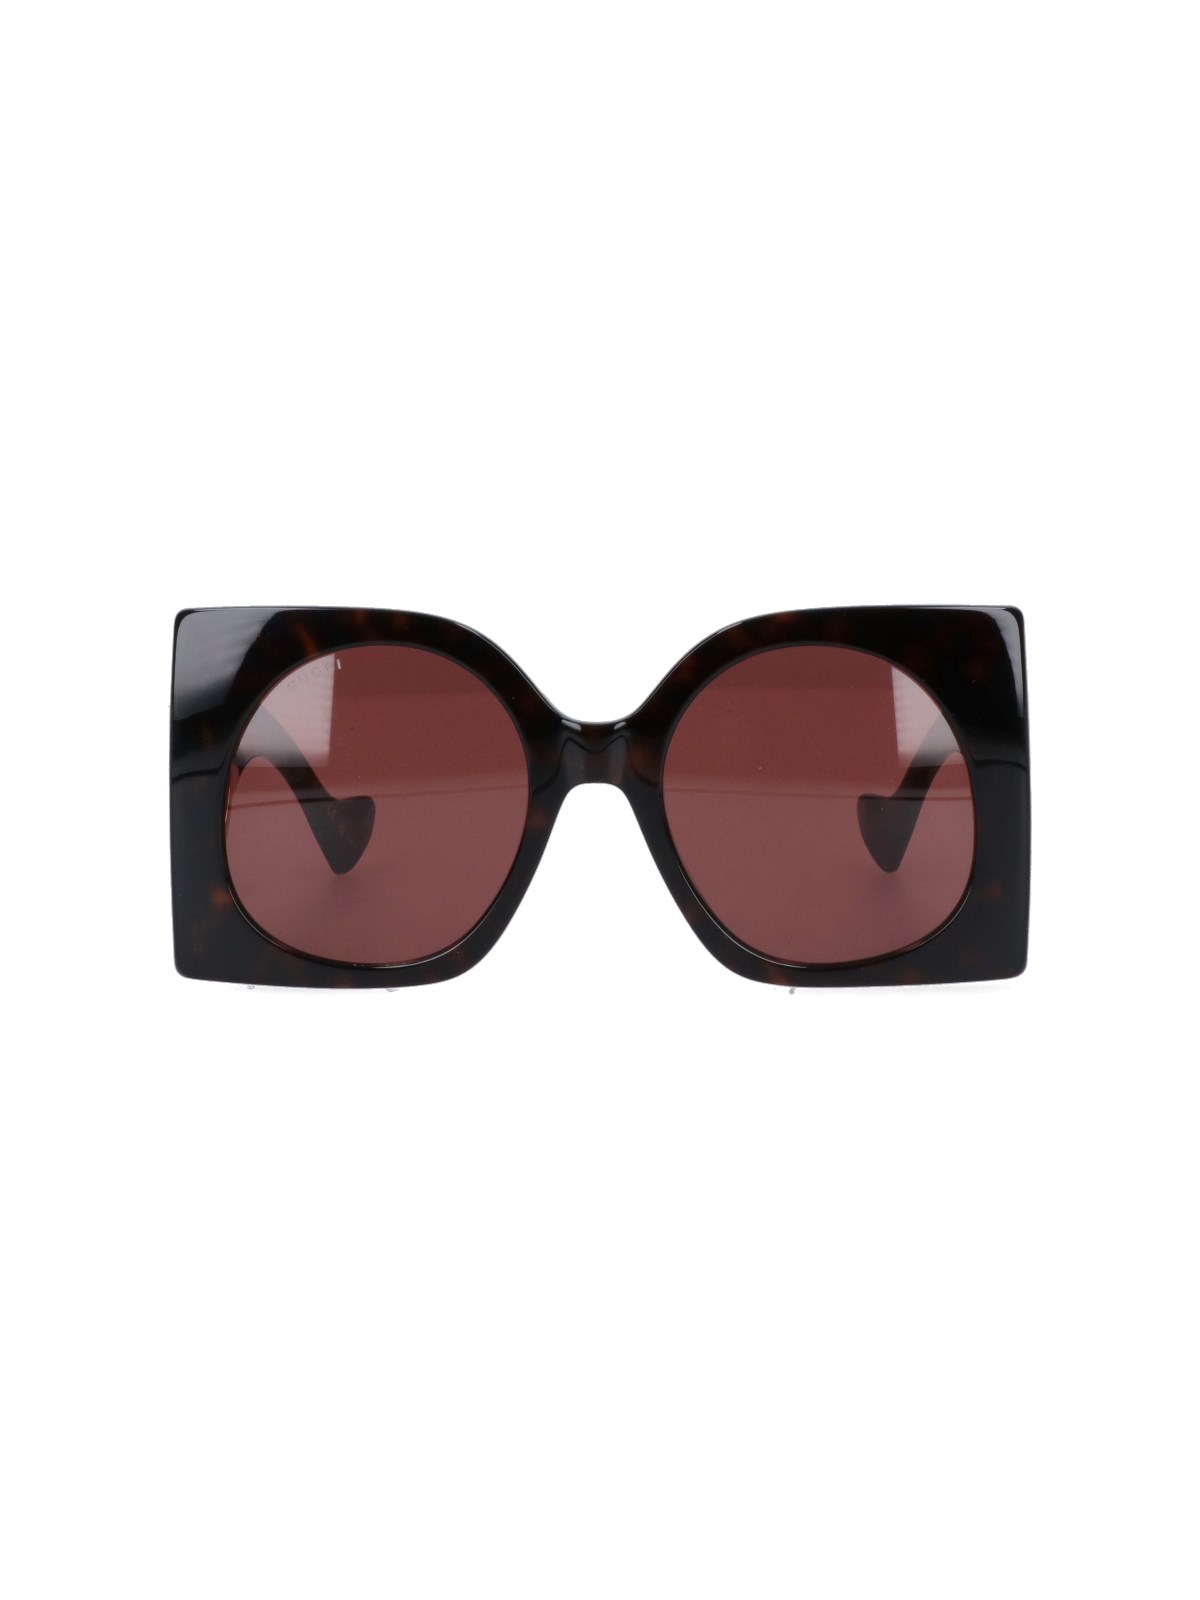 Gucci Square Sunglasses In Marrone